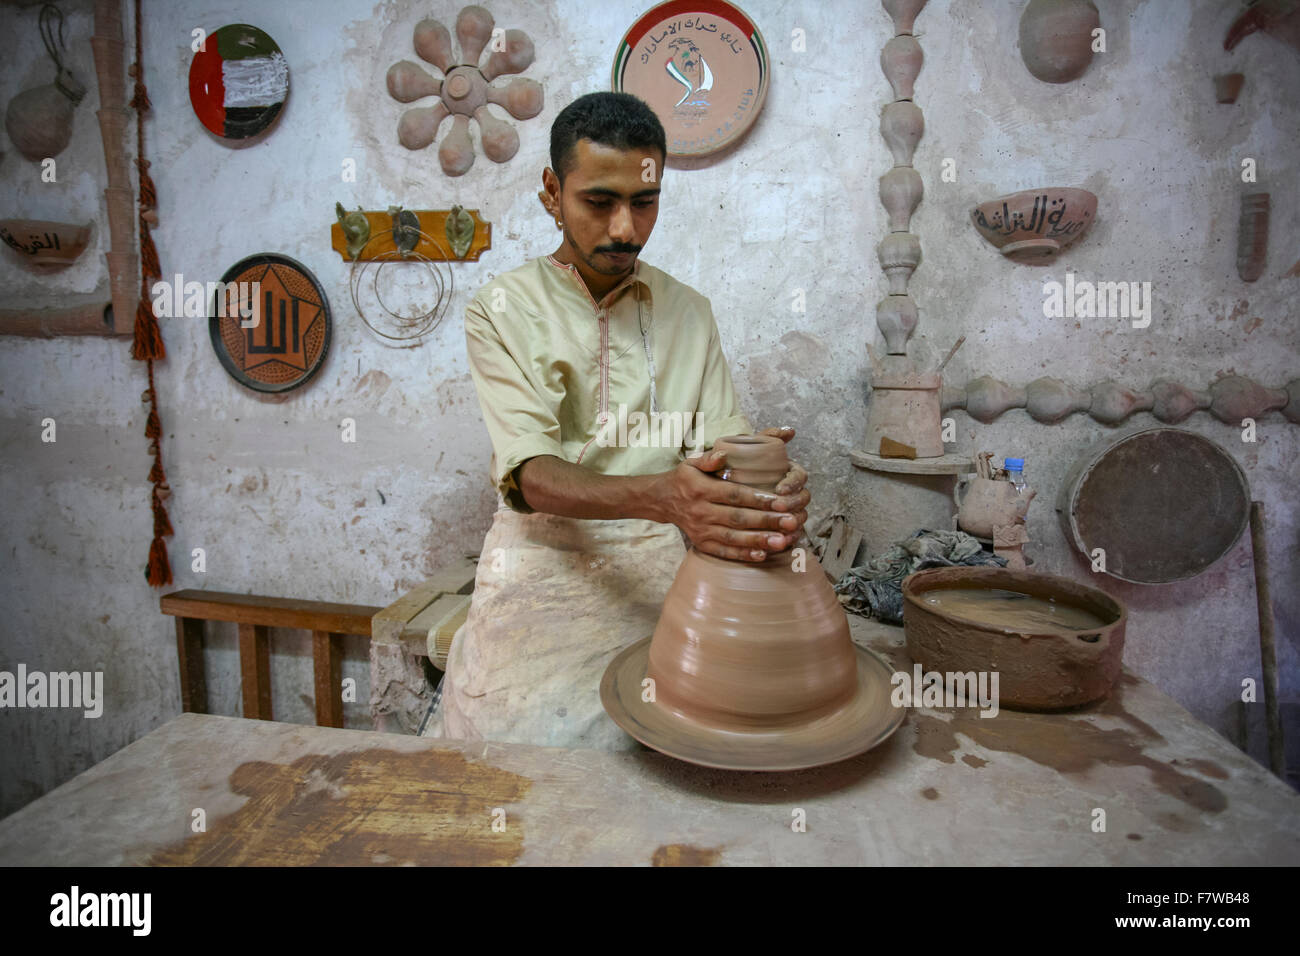 L'homme de la pâte à modeler à la main, Emirates Heritage Village, Abu Dhabi, Émirats Arabes Unis Banque D'Images